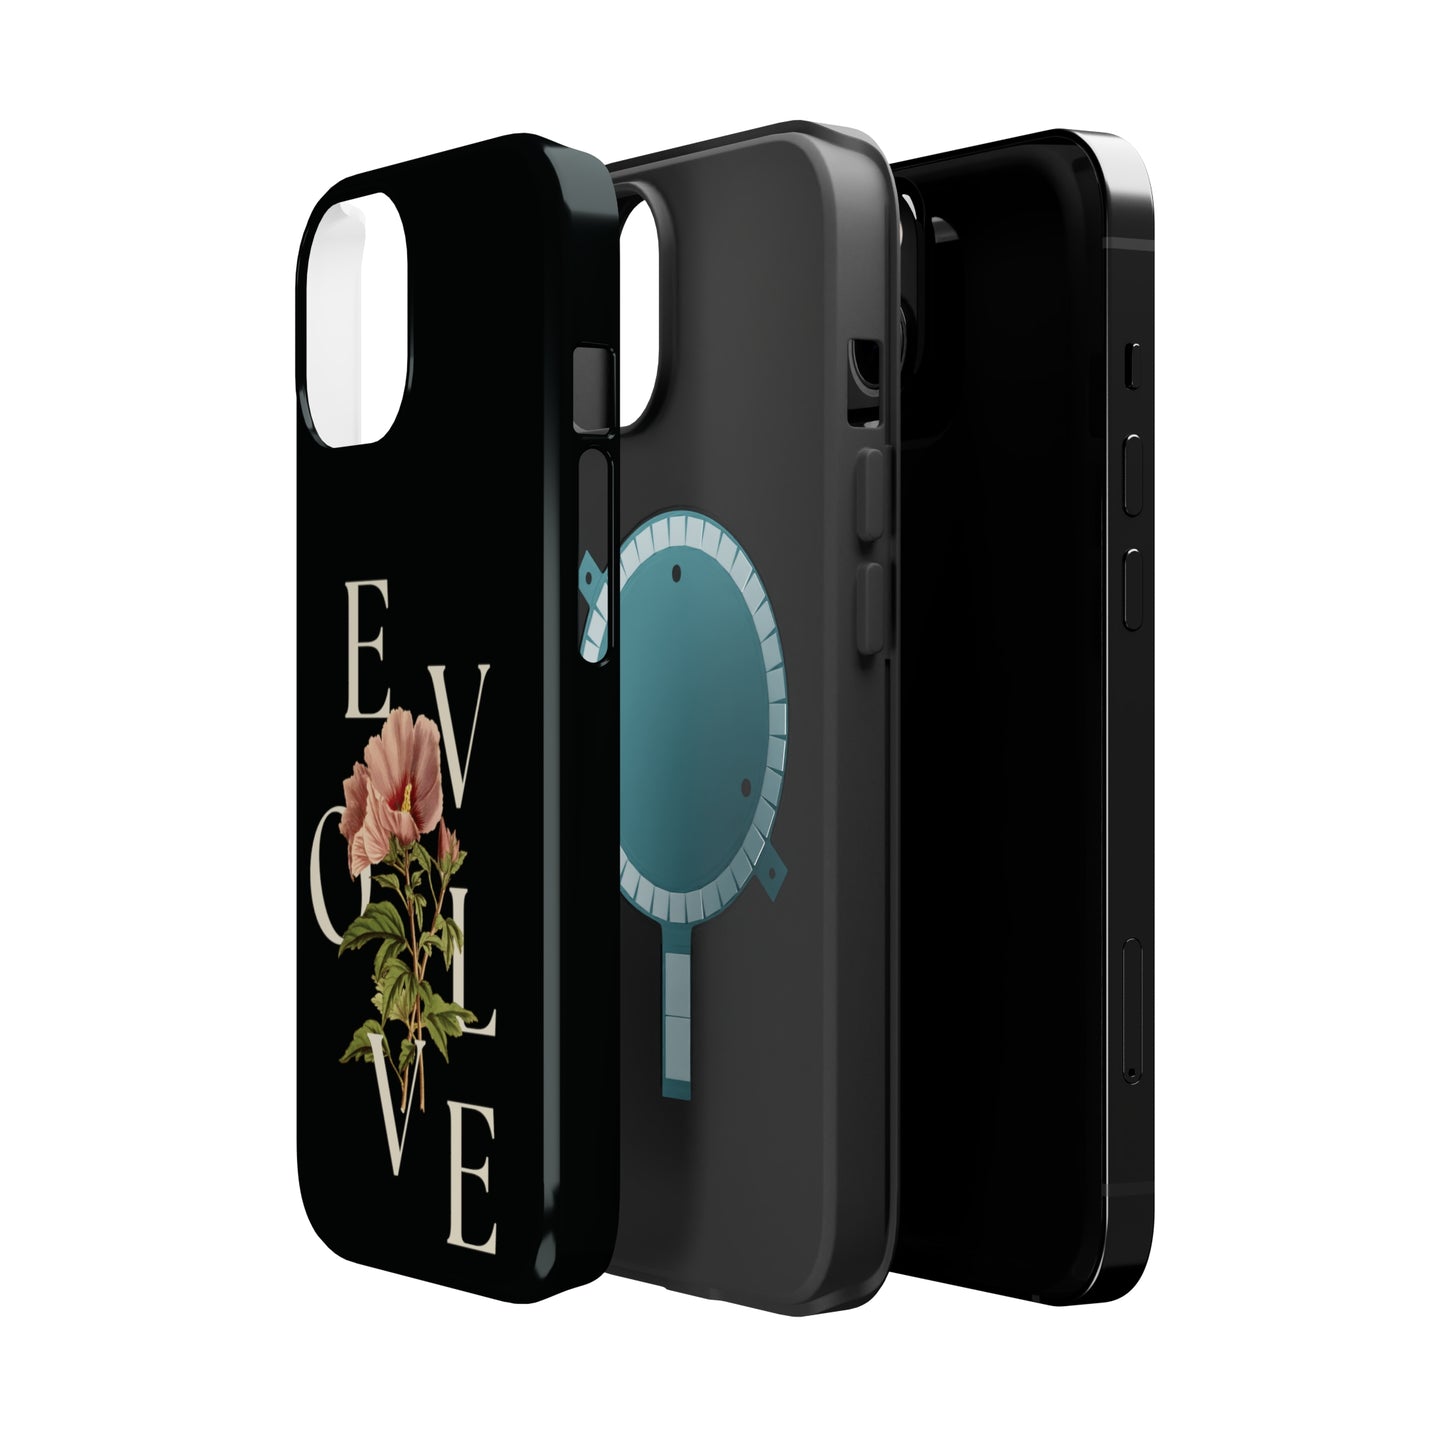 Evolve MagSafe Tough iPhone Case